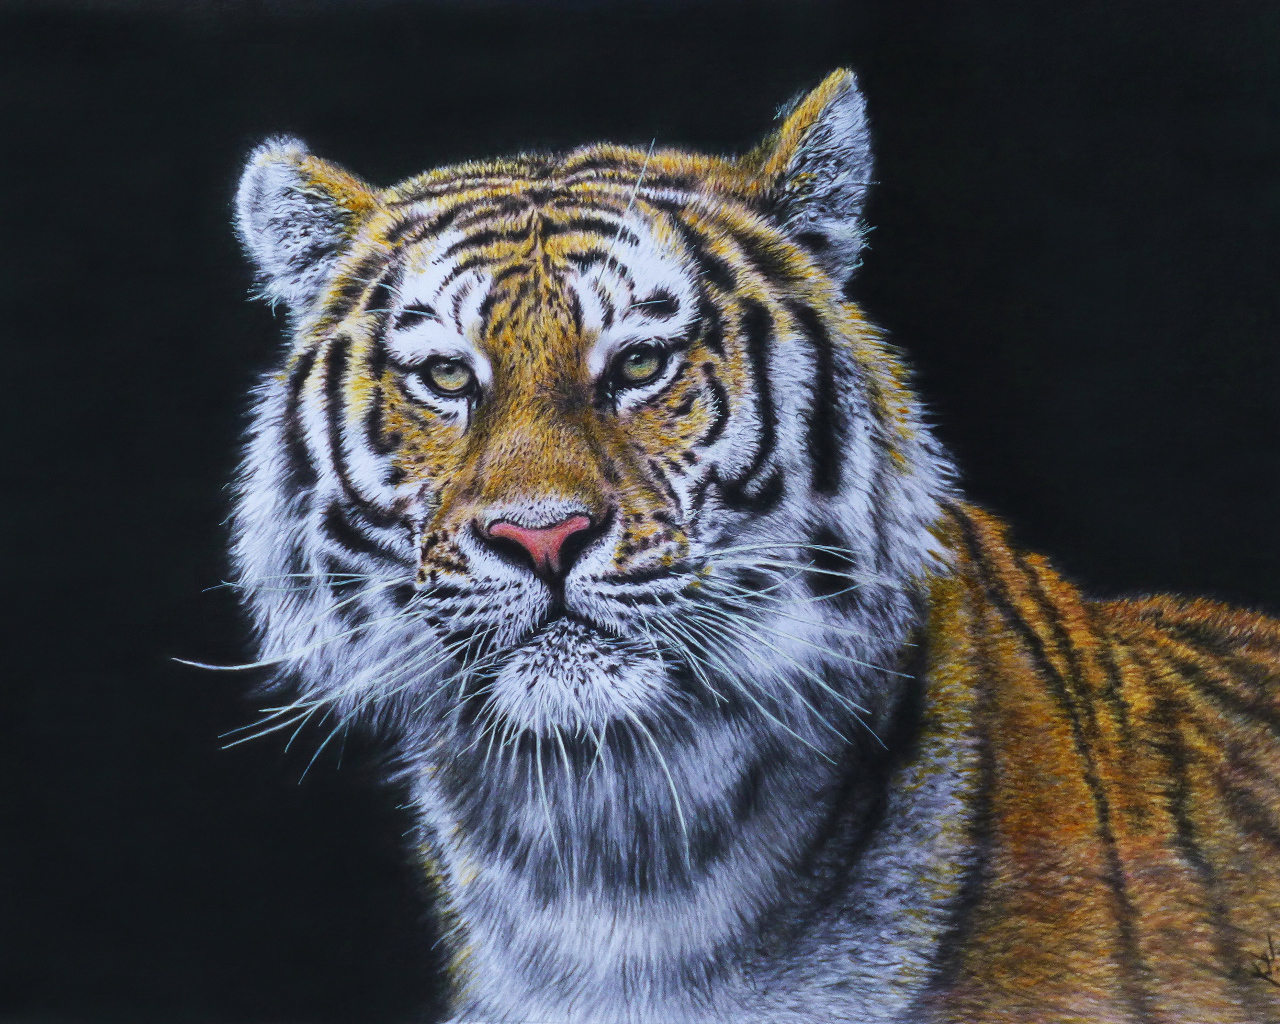 Красивый нарисованный тигр на черном фоне